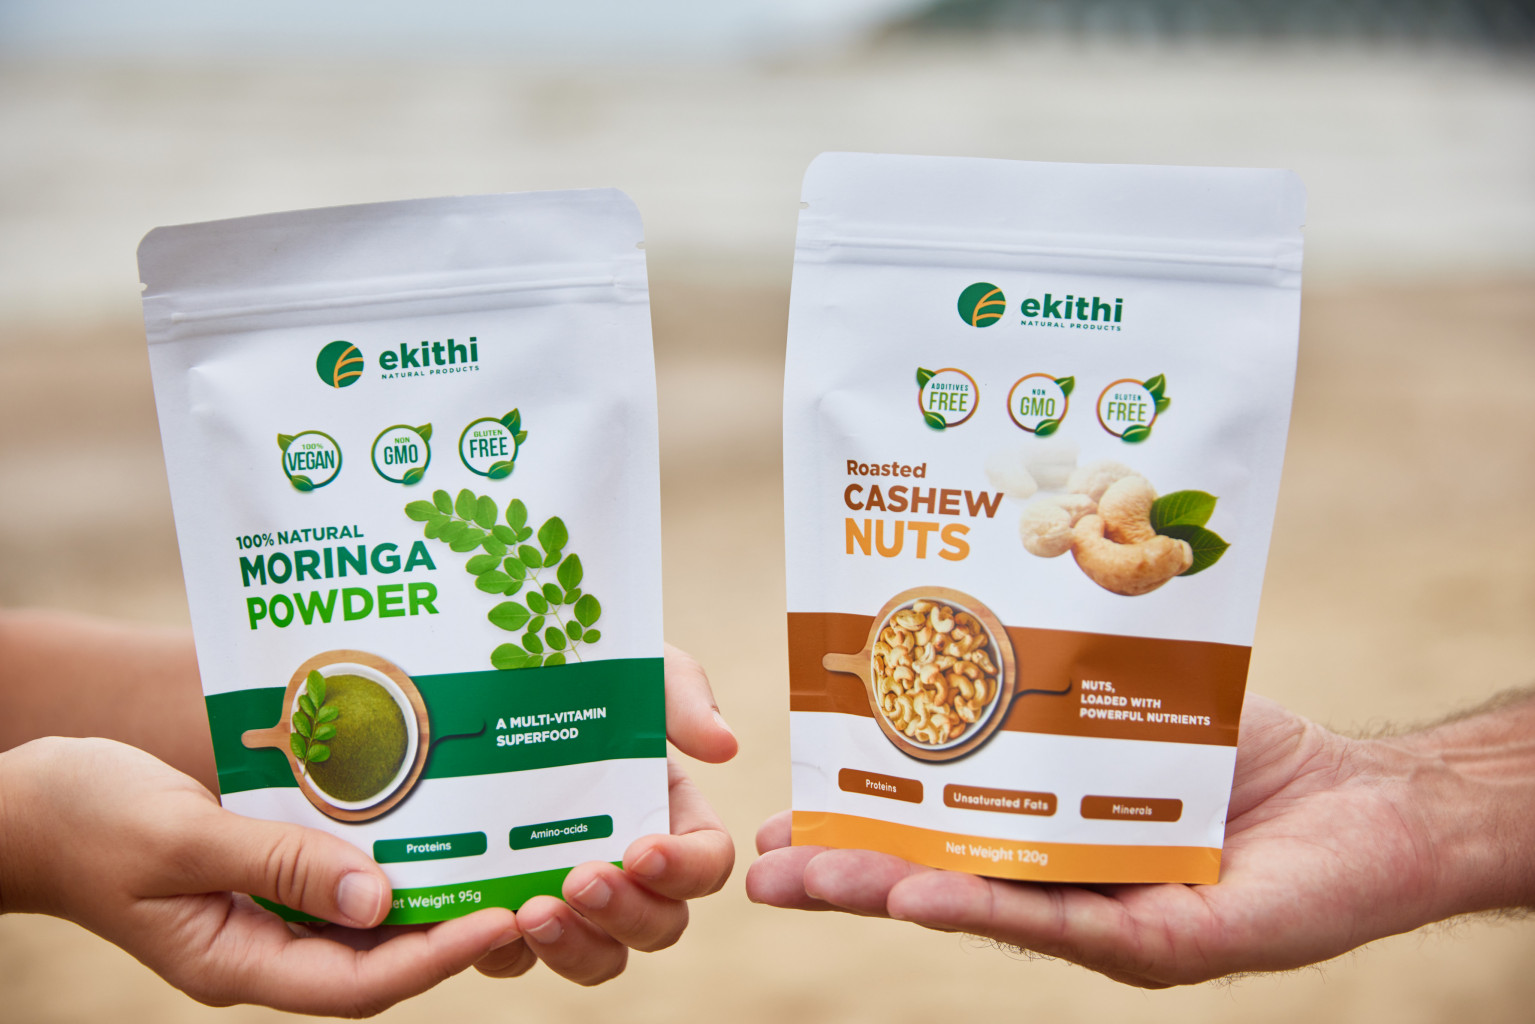 Ekithi moringa powder and cashew nuts